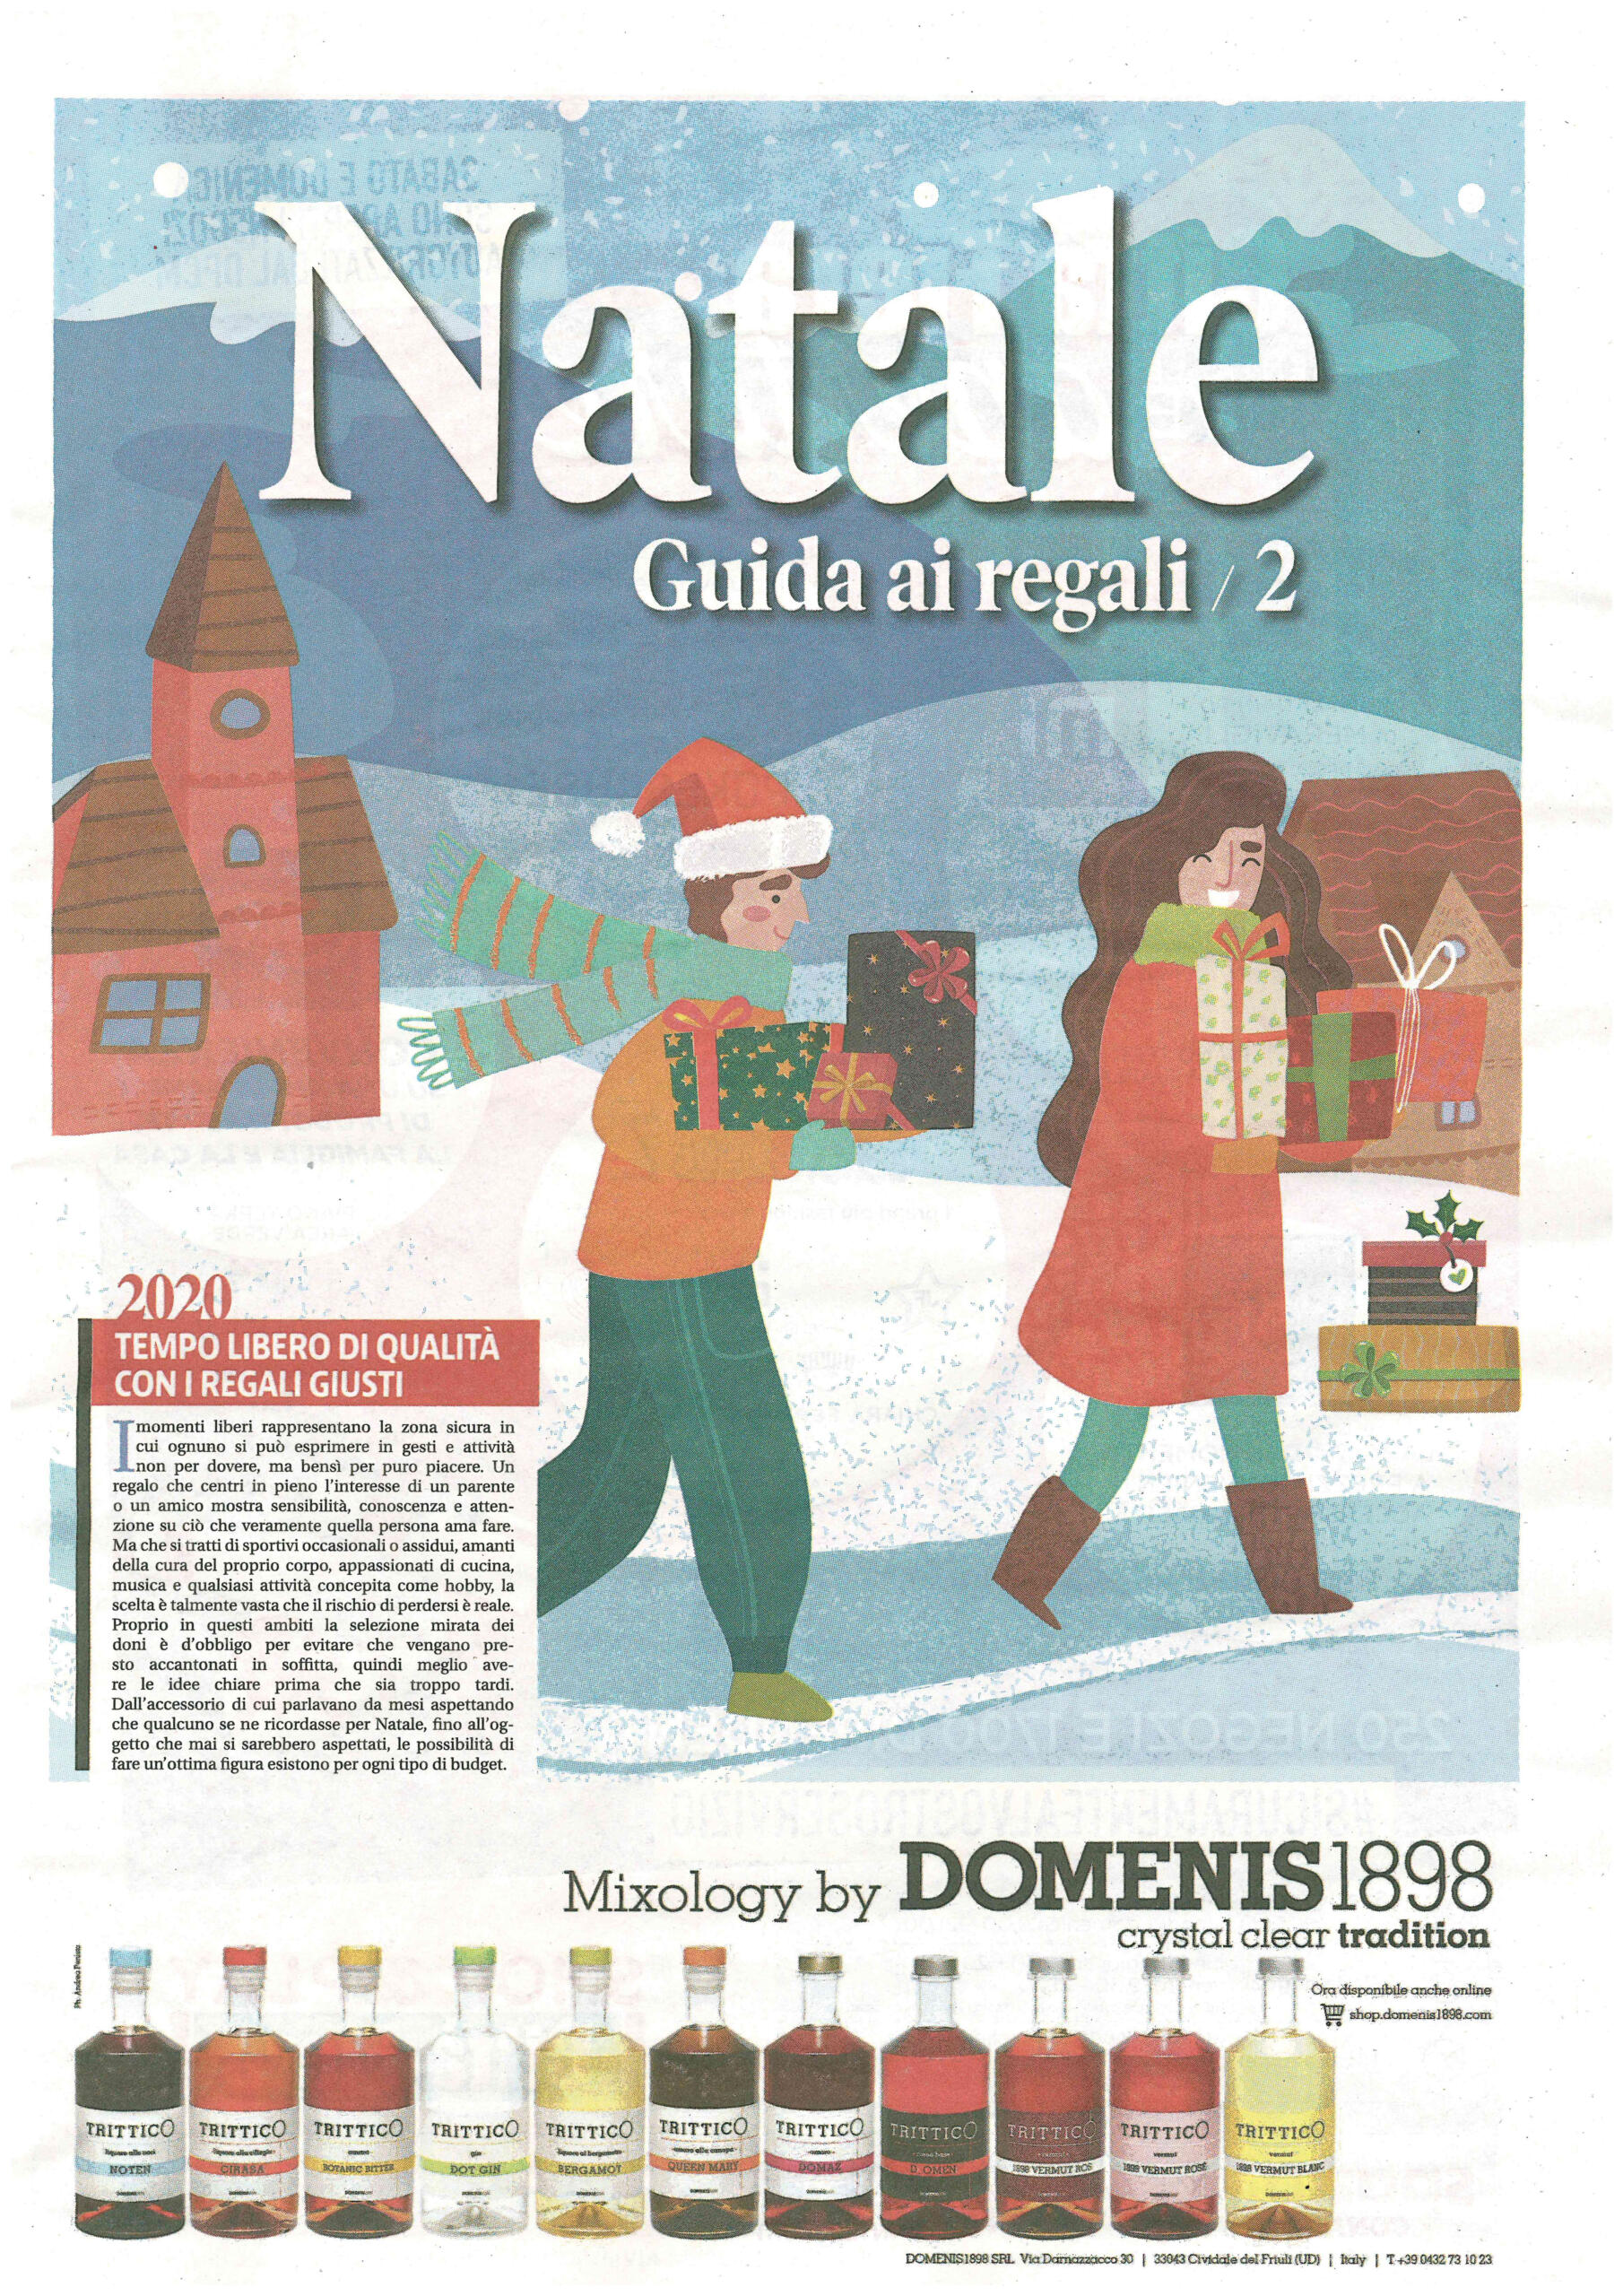 2020 dicembre 12: Messaggero Veneto – Natale, Guida ai regali 2